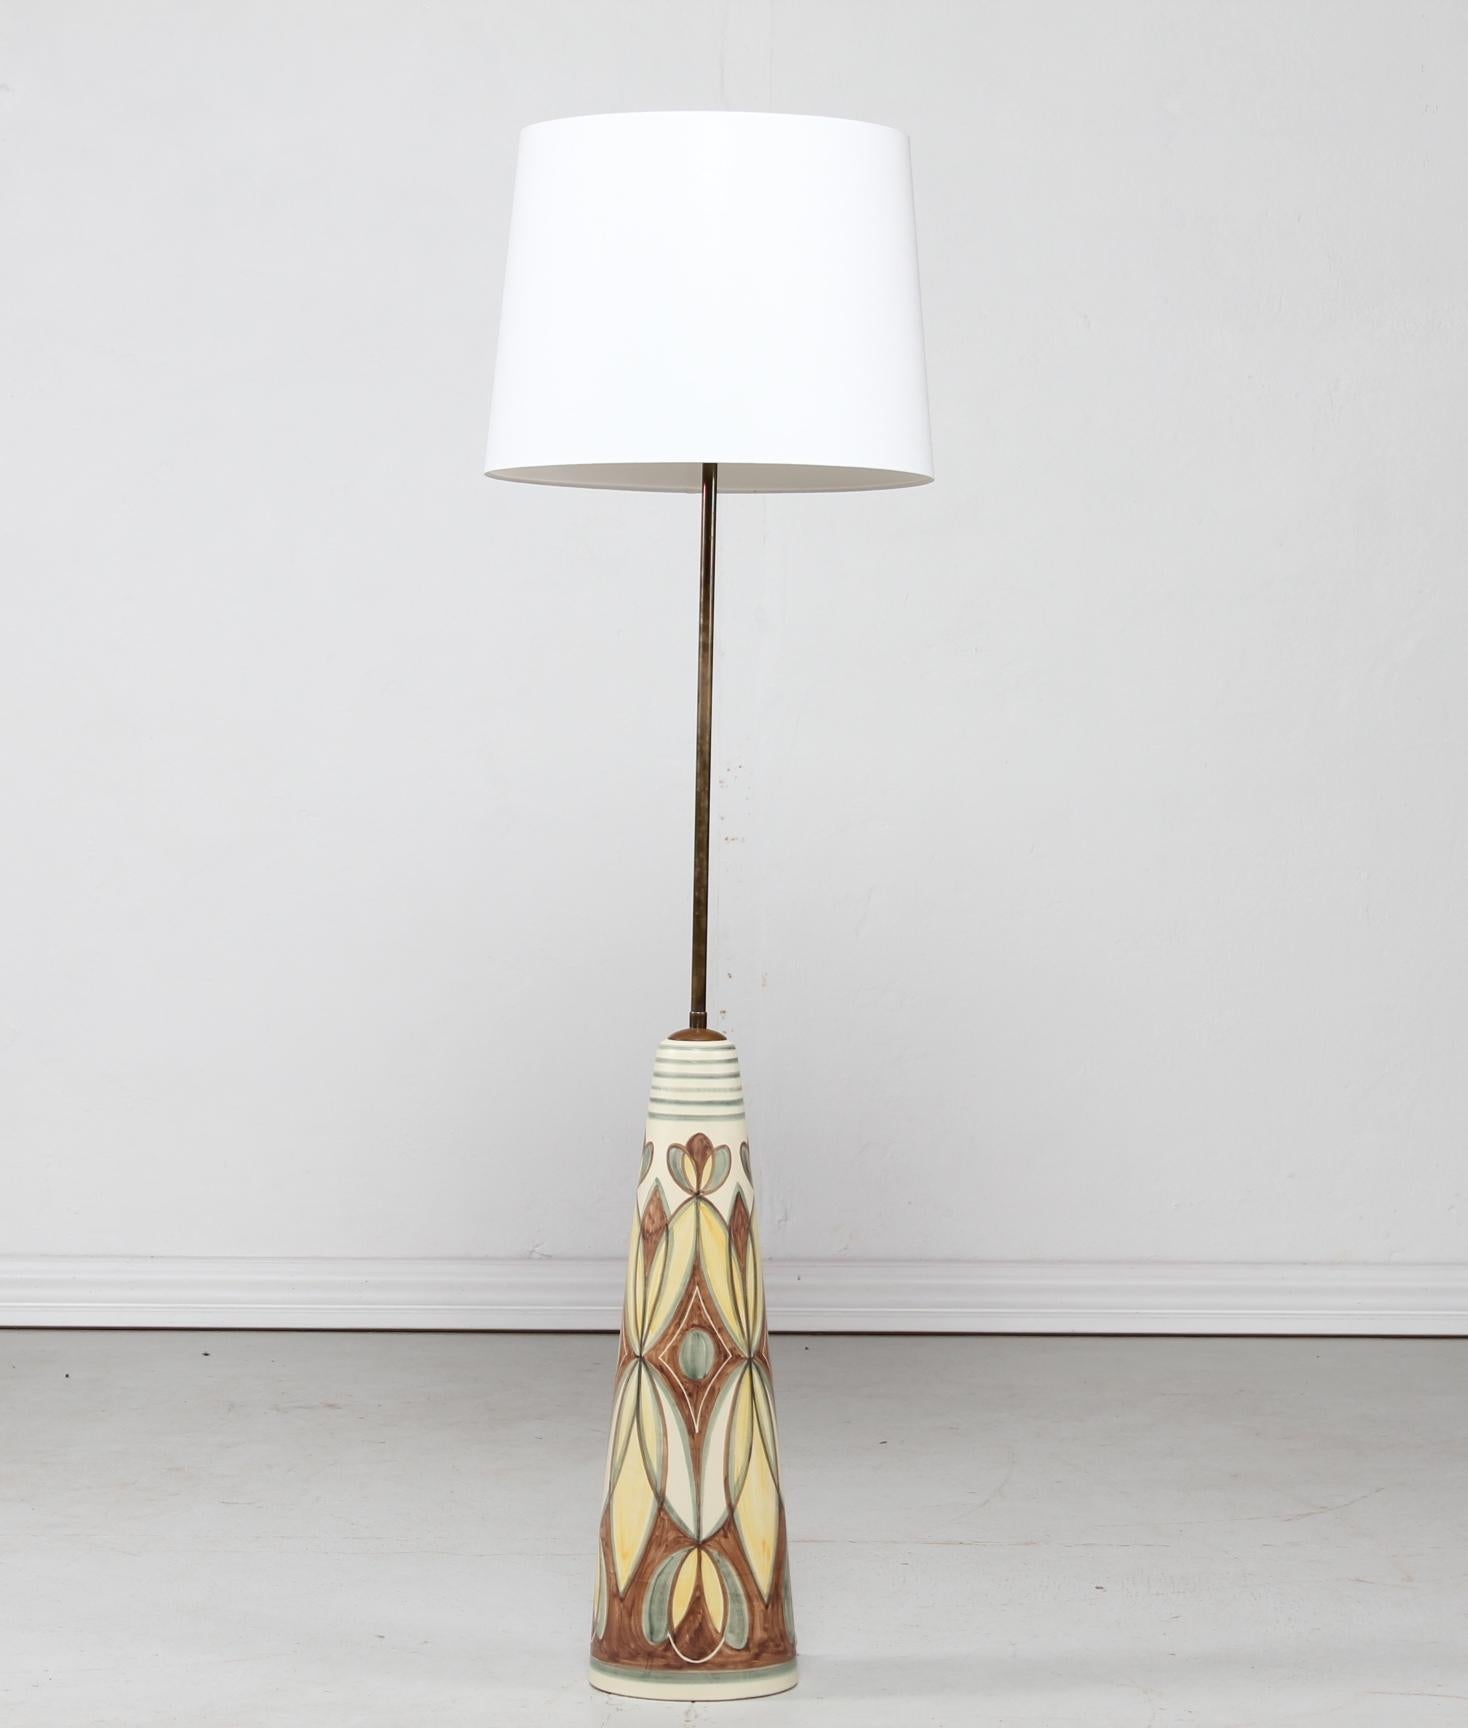 Riesige kegelförmige, handbemalte Keramik-Stehlampe des dänischen Künstlers Rigmor Nielsen für Søholm, Bornholm, Dänemark.
Der Keramikfuß ist mit einem Blumenmotiv auf einer cremefarbenen Glasur verziert.
Sie hat einen Messingstiel und enthält